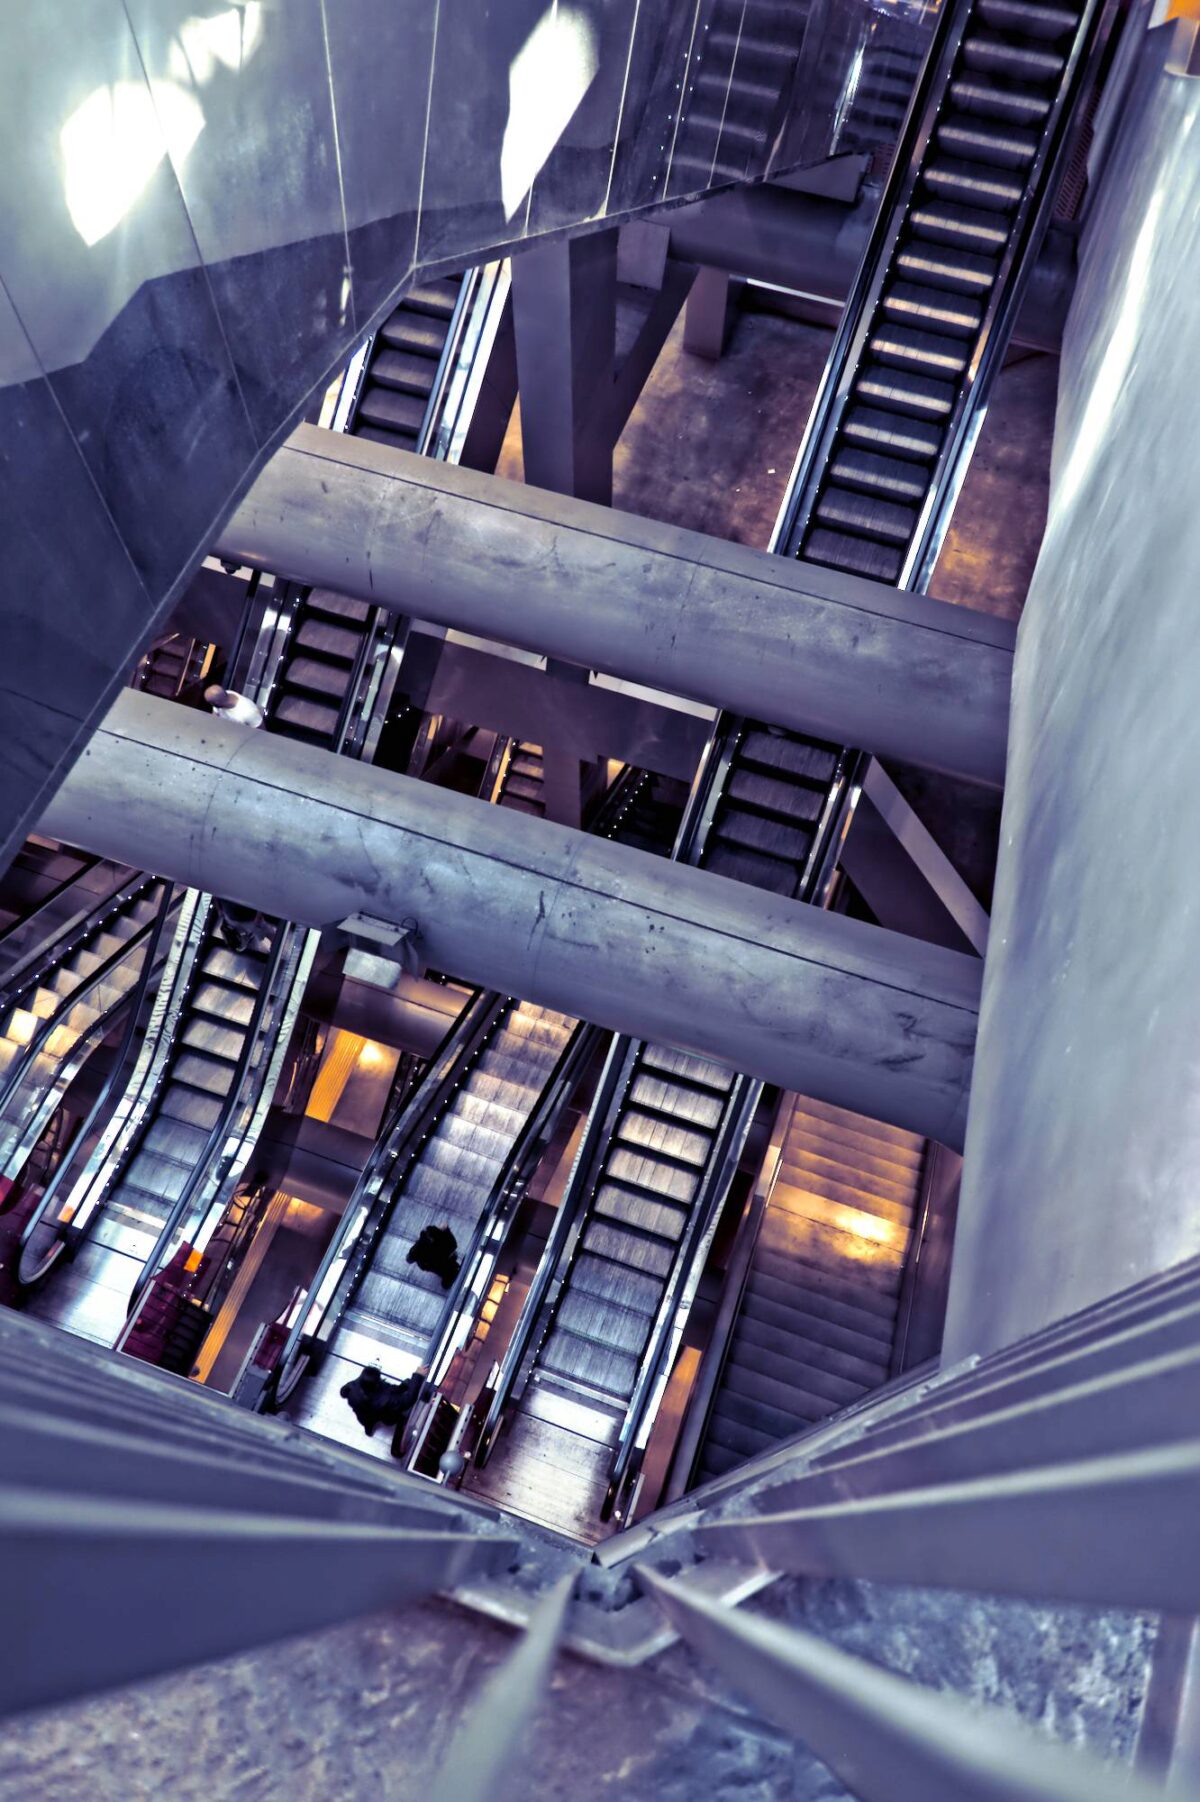 Le scale scendono all'interno del pozzo per decine di metri ingoiando i passeggeri